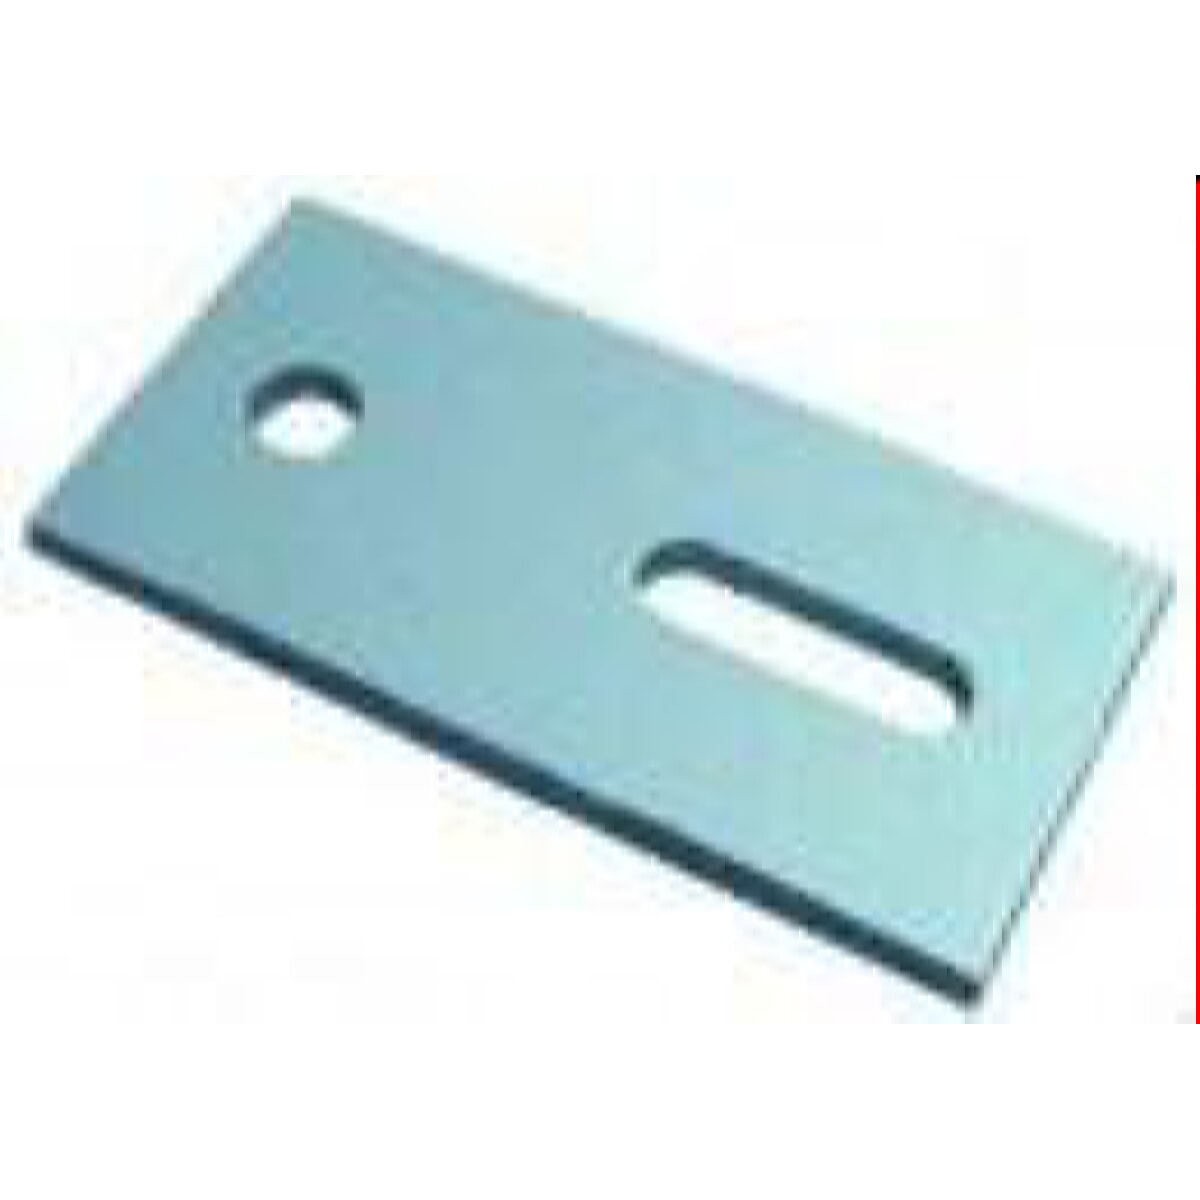 Schletter mounting plate 119002-000 for hanger screws M10/M12